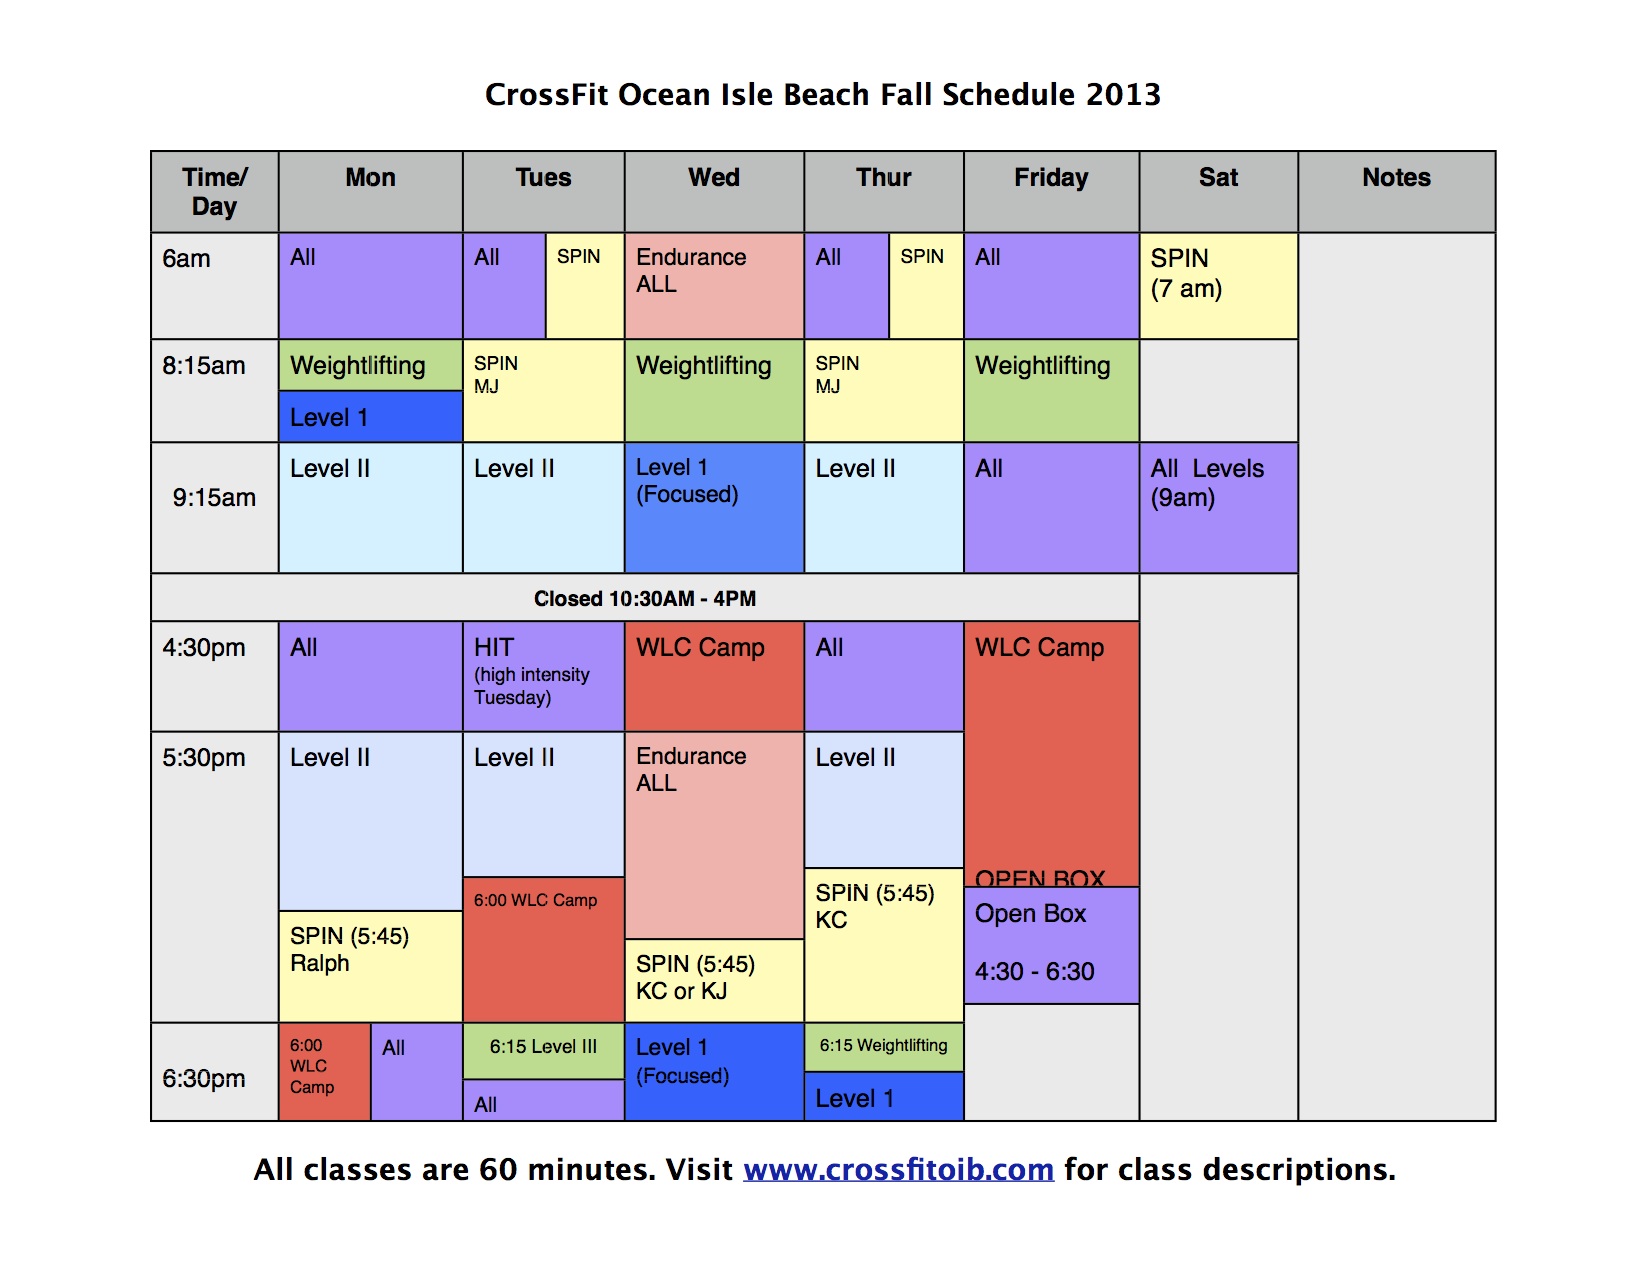 Fall Schedule | CrossFit Ocean Isle Beach